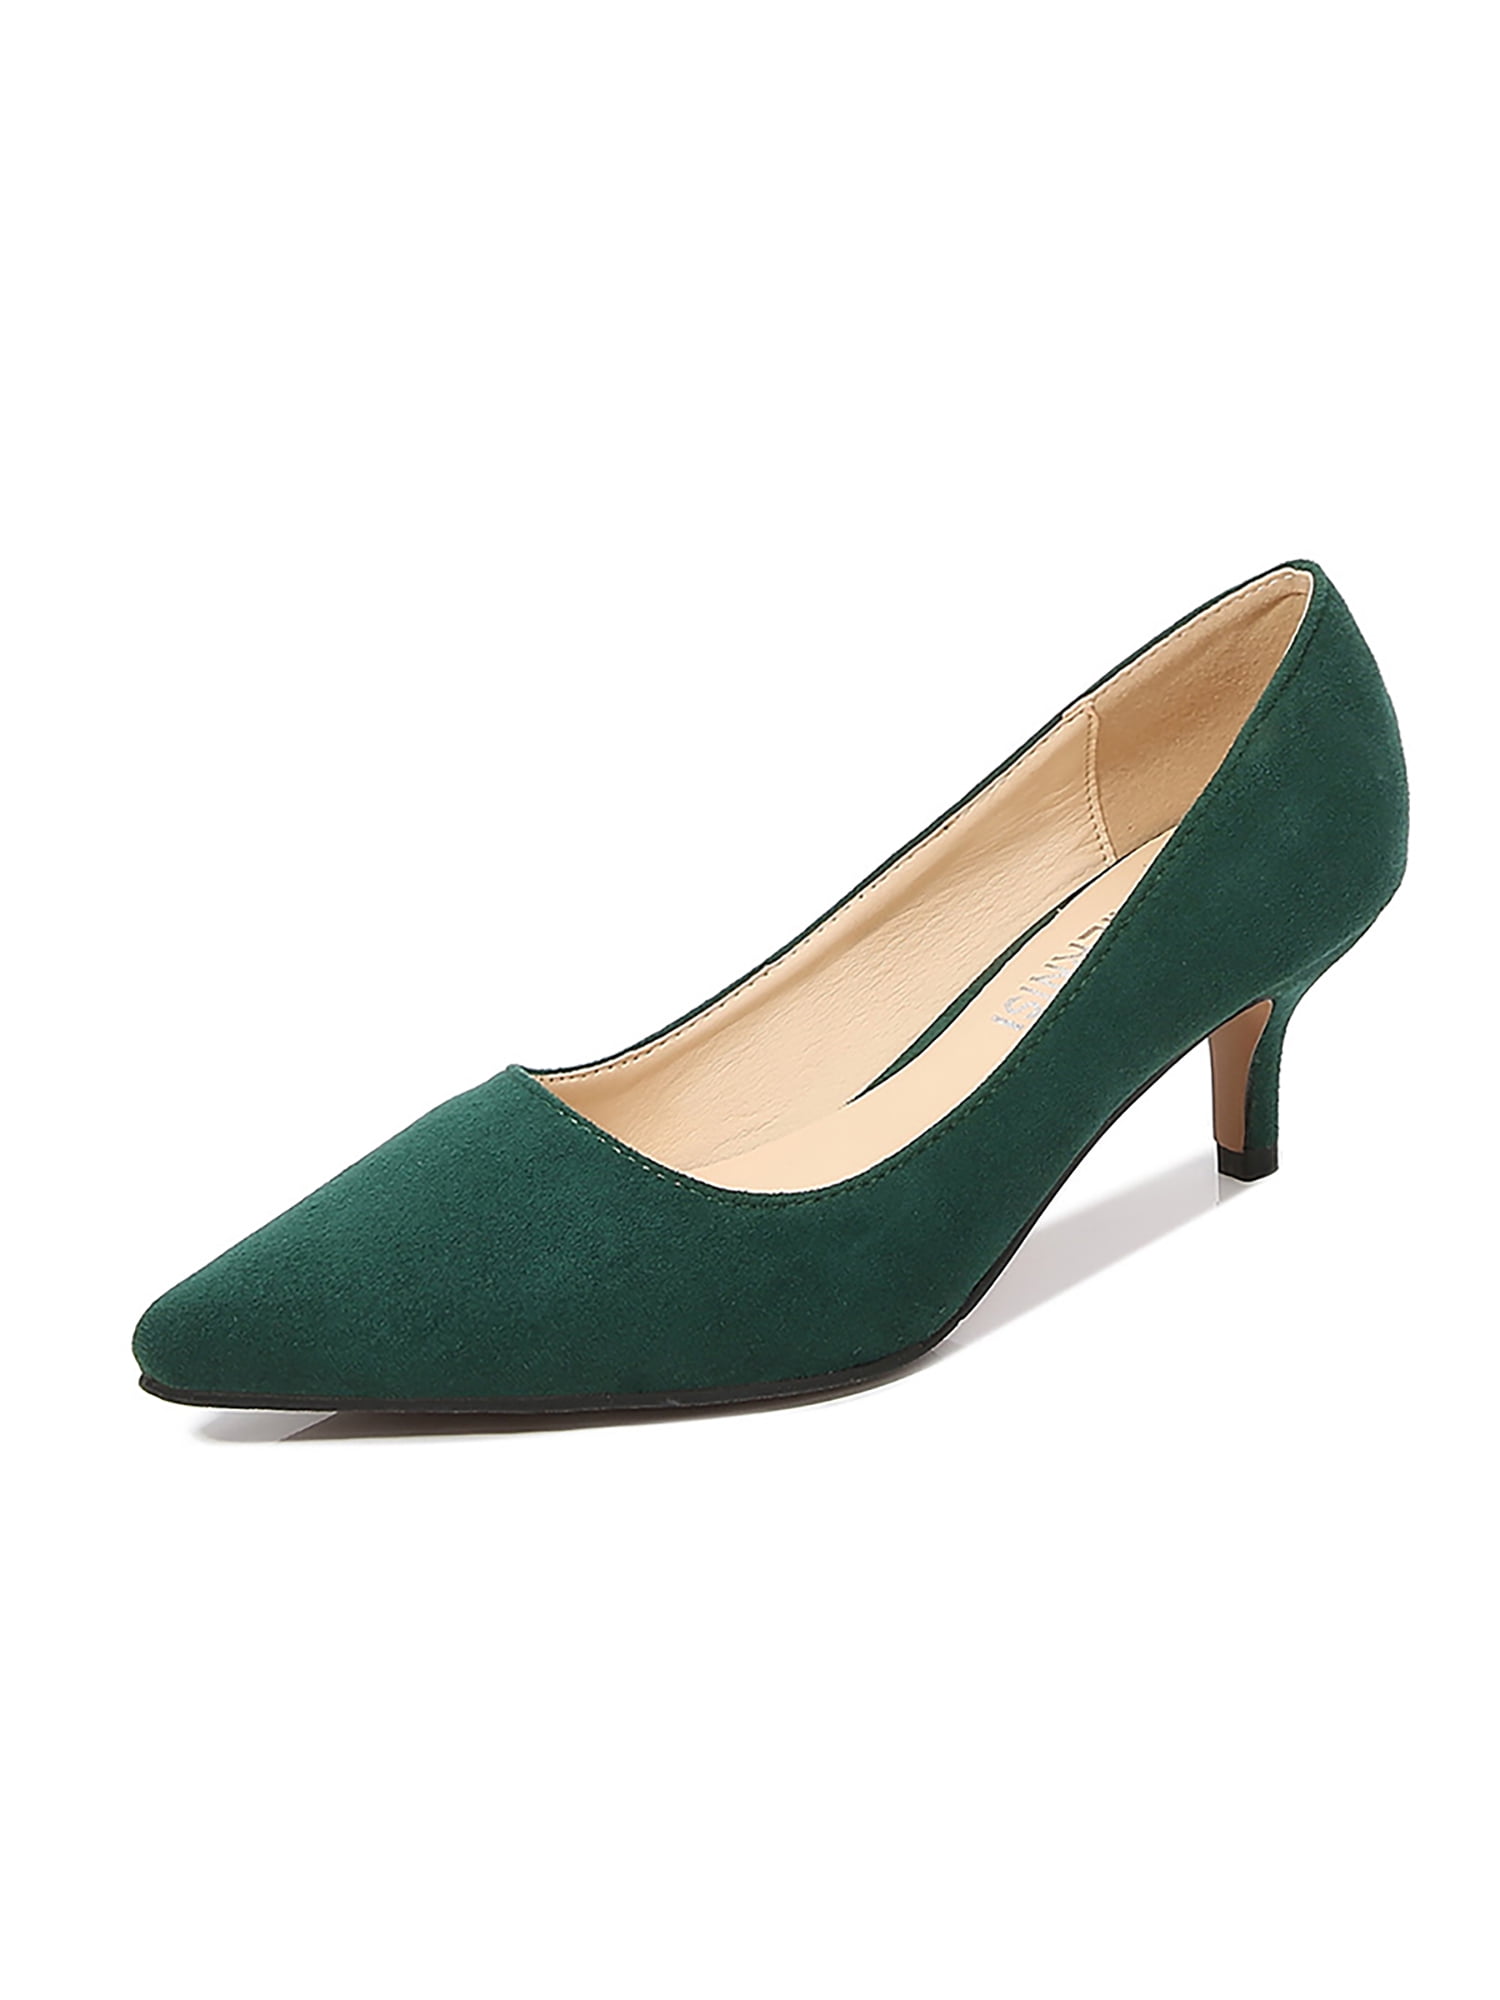 Buy Women Green Casual Heels Online - 718945 | Allen Solly